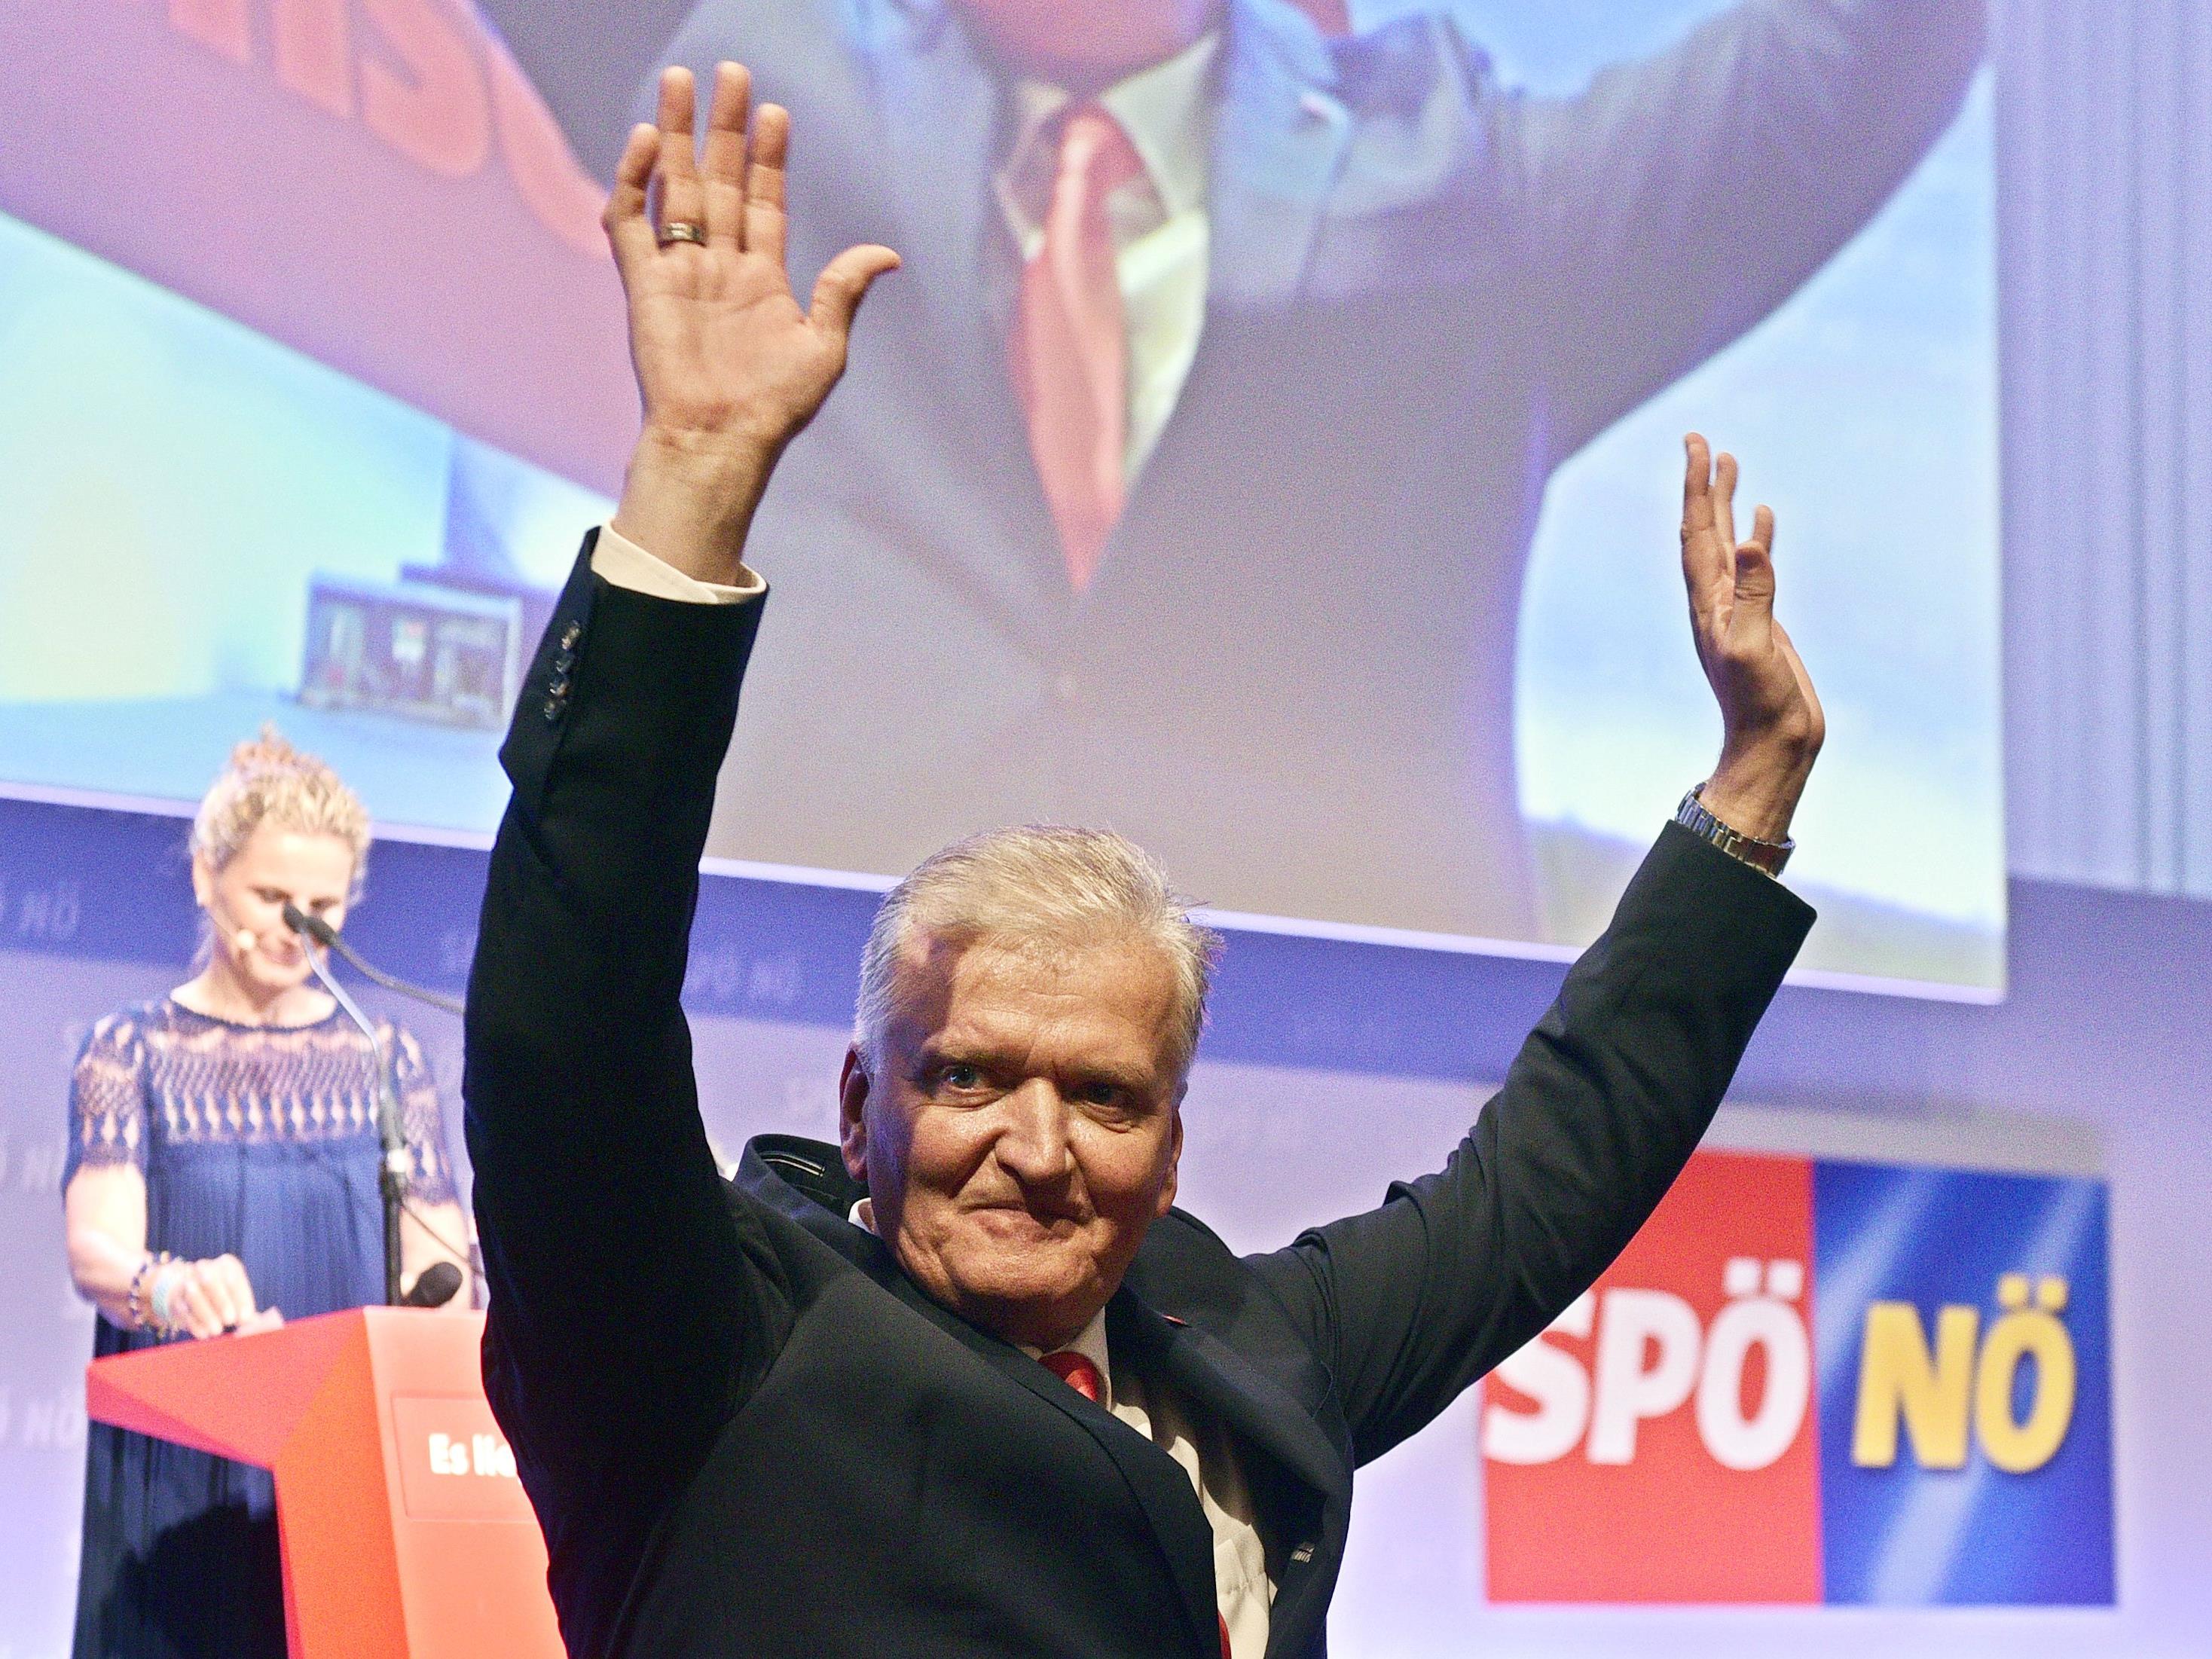 Franz Schnabl wurde mit überzeugender Mehrheit zum Landesparteivorsitzenden der SPÖ NÖ gewählt.